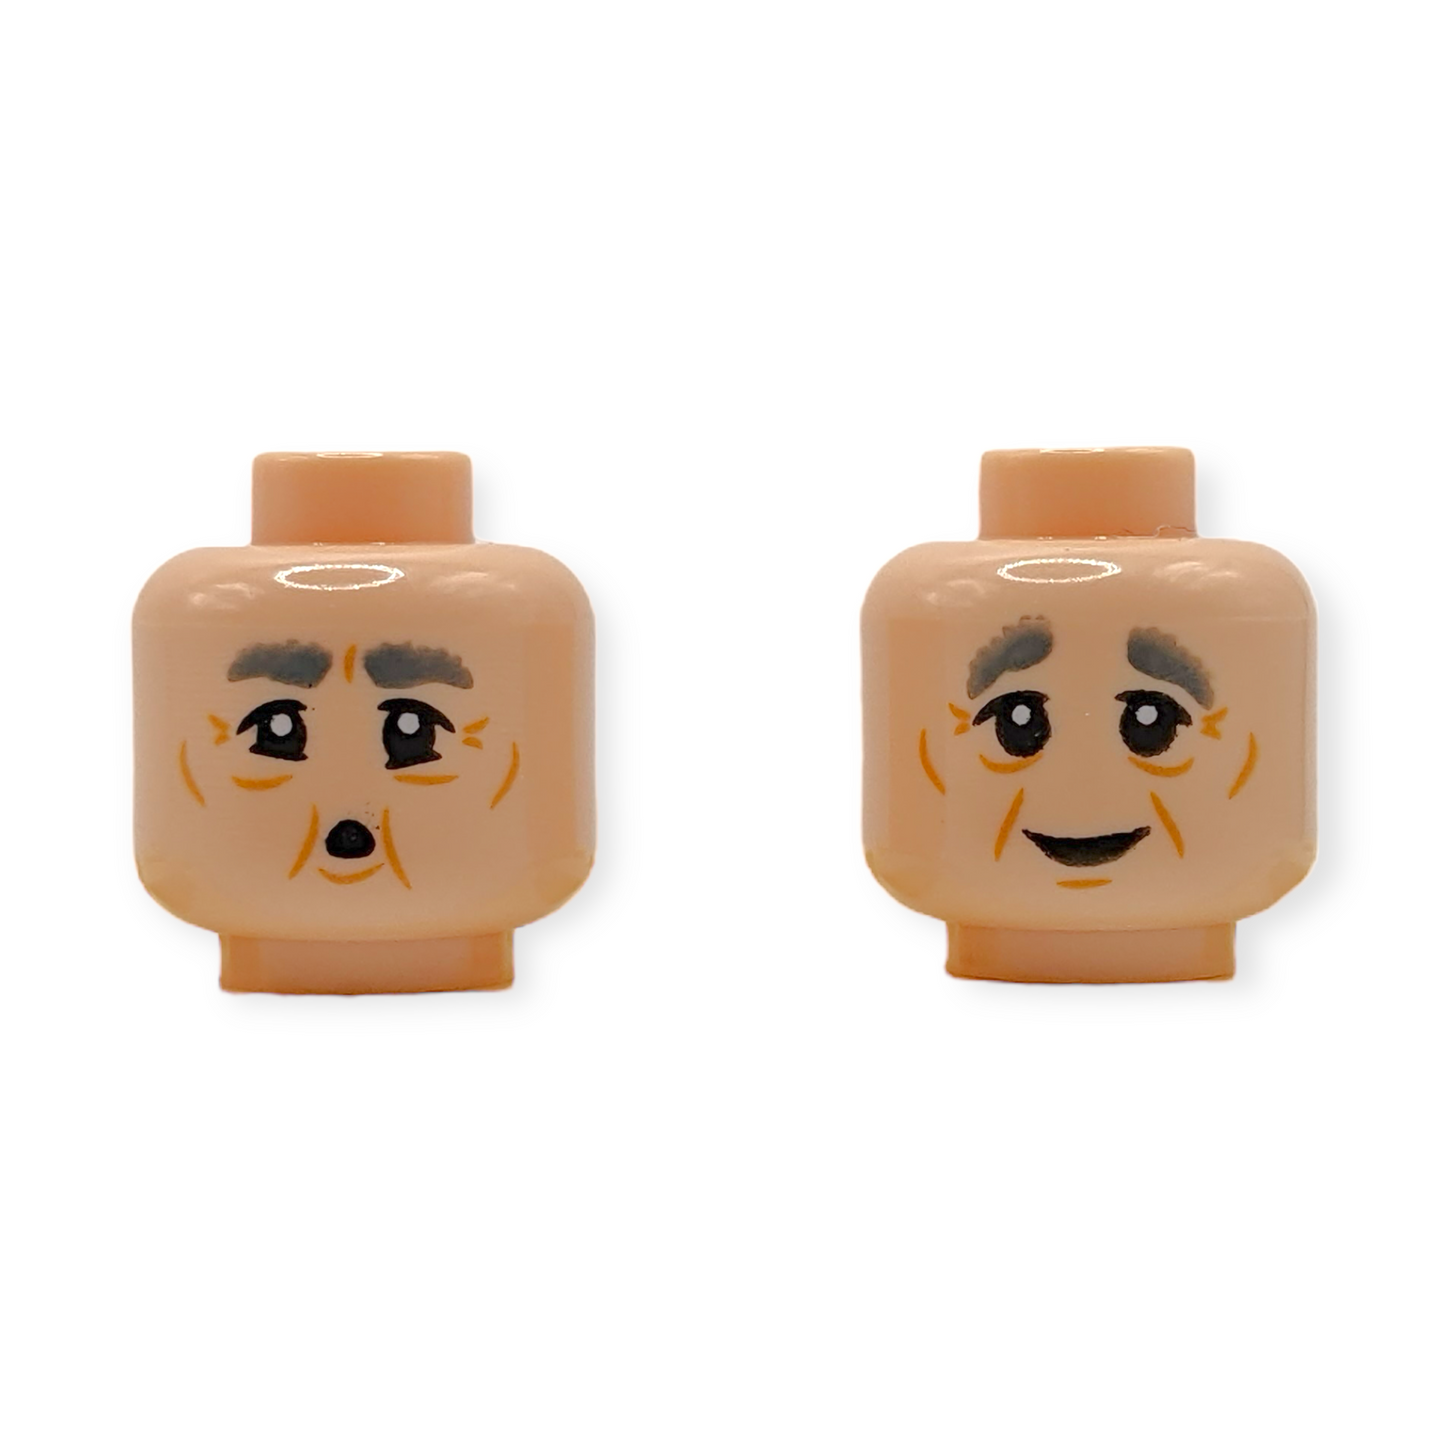 LEGO Head - 3508 Dual Sided Dark Bluish Gray Eyebrows